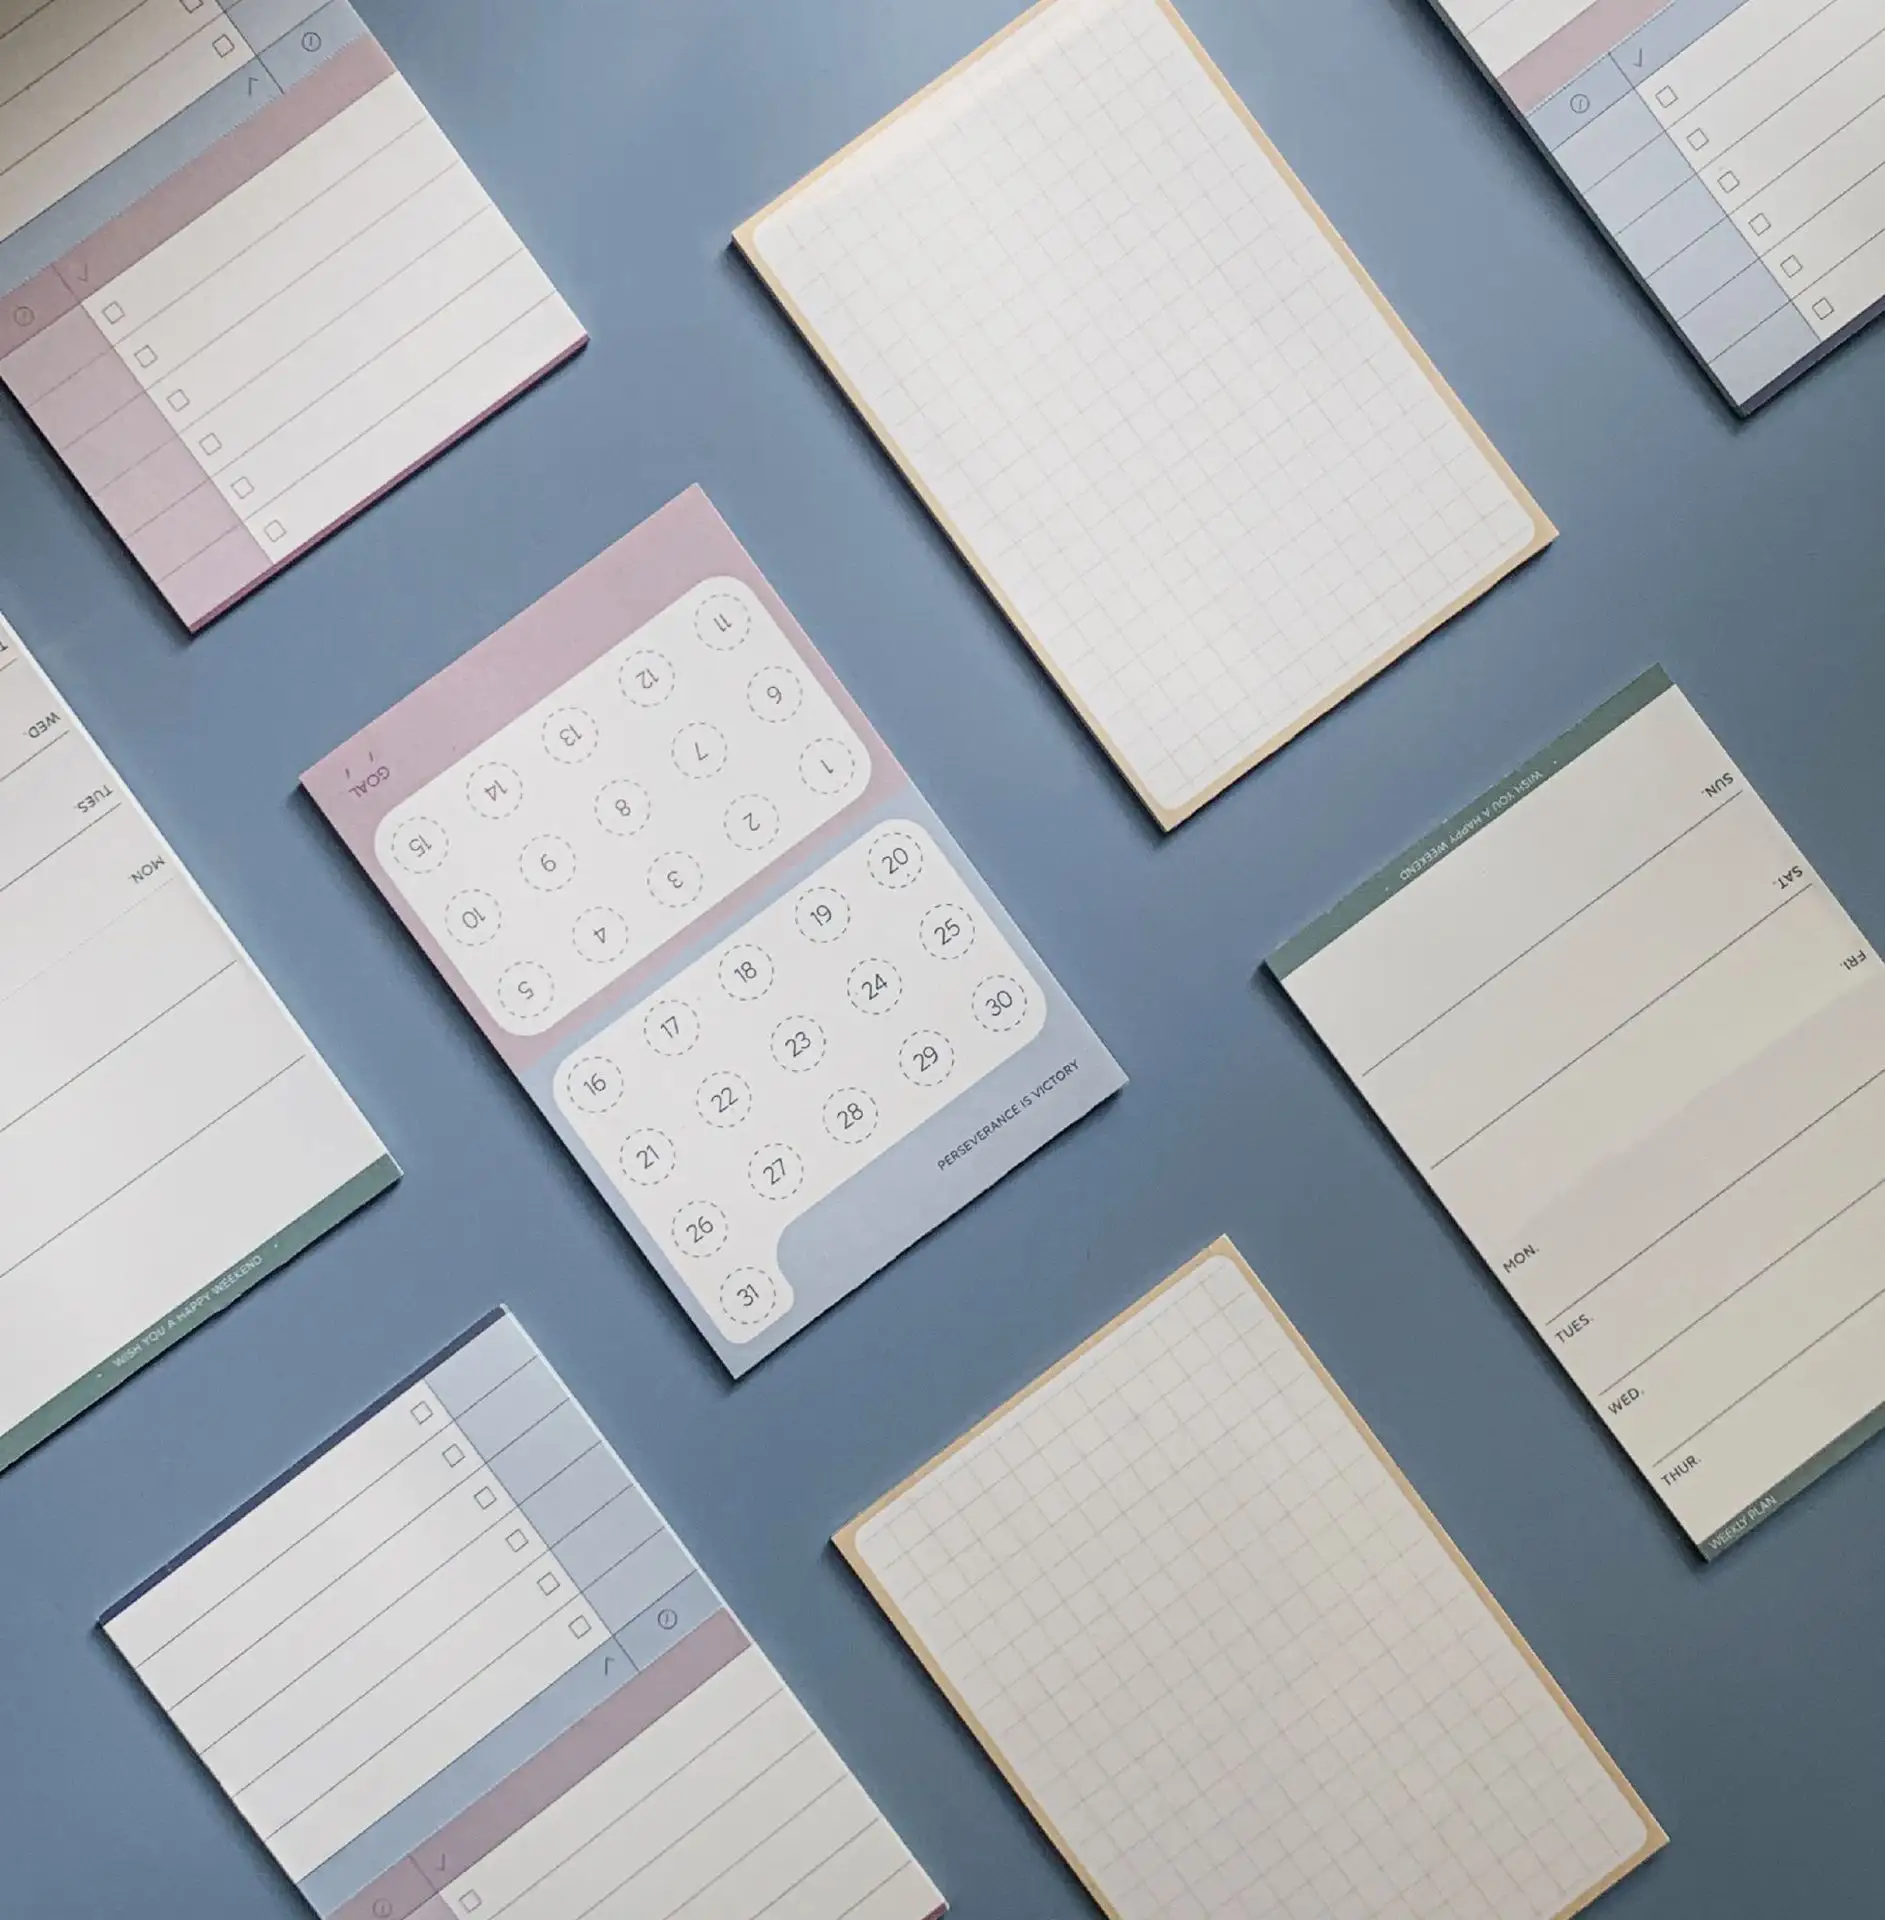 สำนักงานโรงเรียนคลาสสิกนักเรียนโต๊ะเขียนหนังสือบันทึกกำหนดการวางแผน Notepad แผ่นบันทึกอุปกรณ์เครื่องเขียน